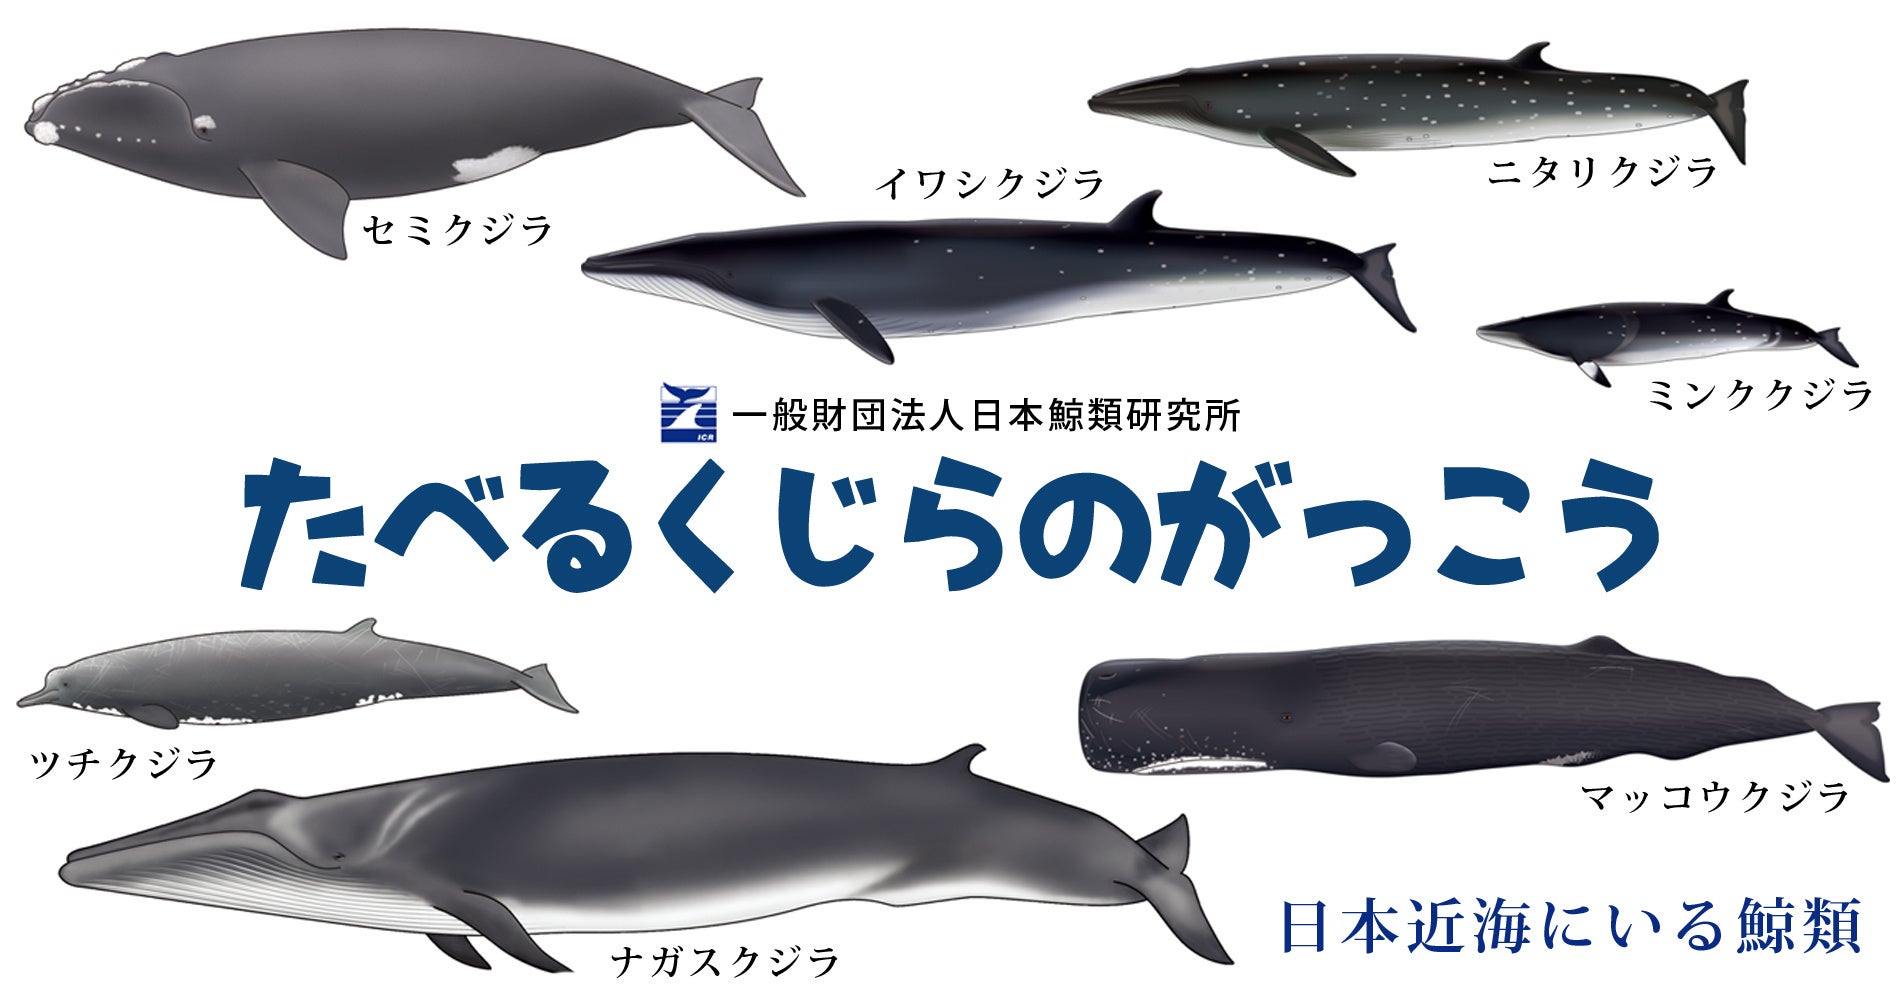 親子で鯨の持続的利⽤や鯨食文化を学ぶ「たべるくじらのがっこう」を横浜みなとみらいで開催のサブ画像1